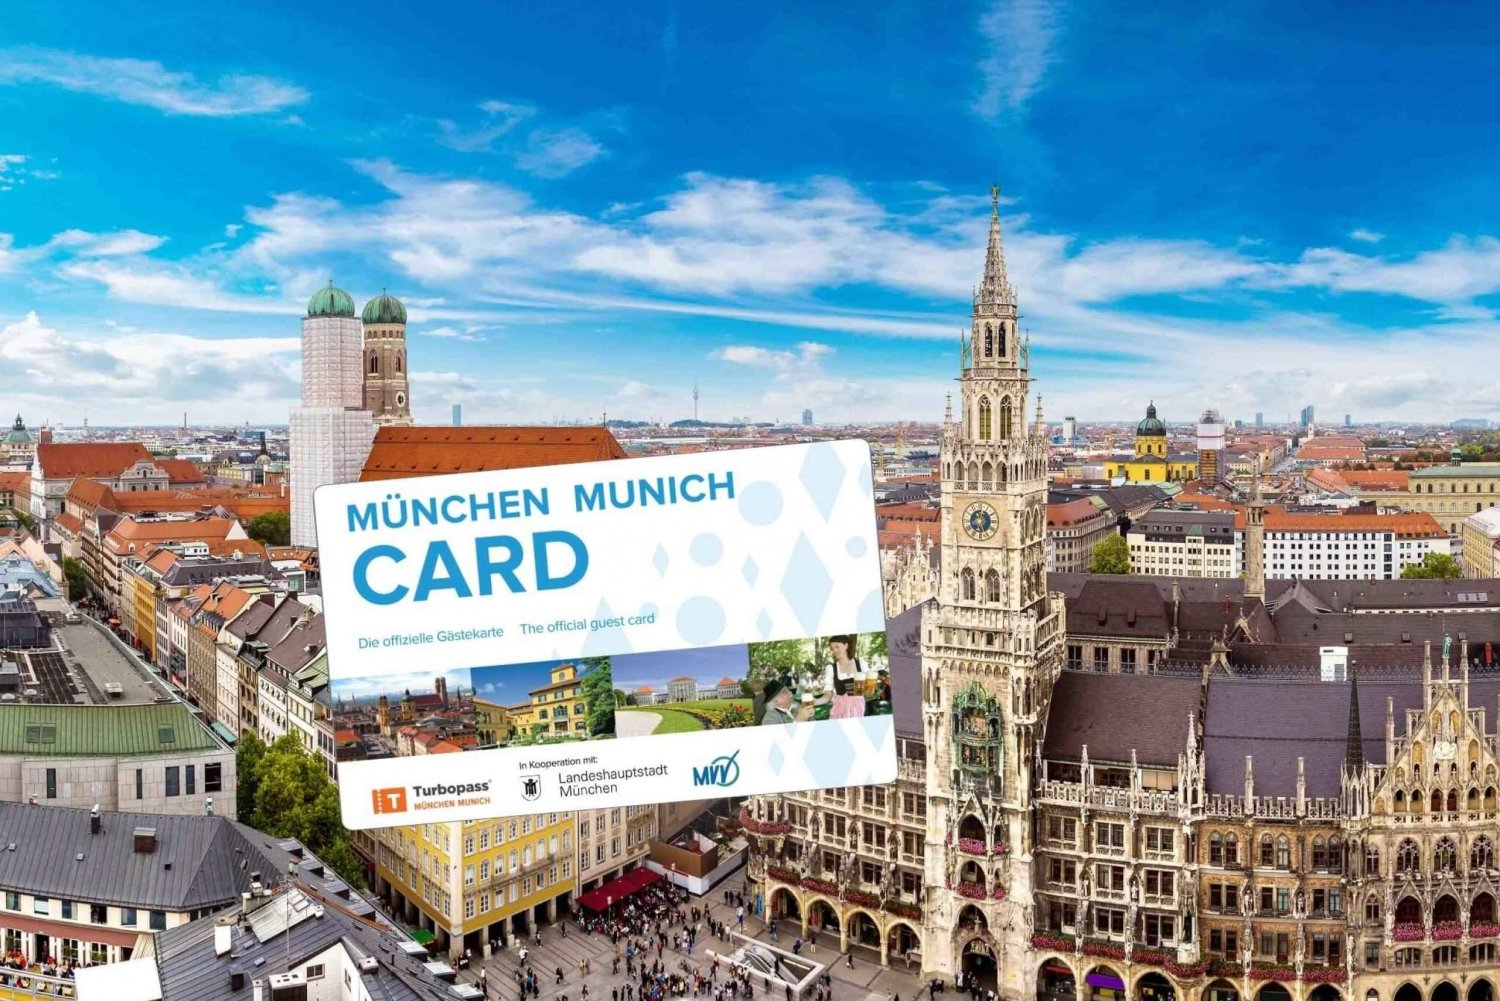 München: City Card für öffentliche Verkehrsmittel und Ermäßigungen